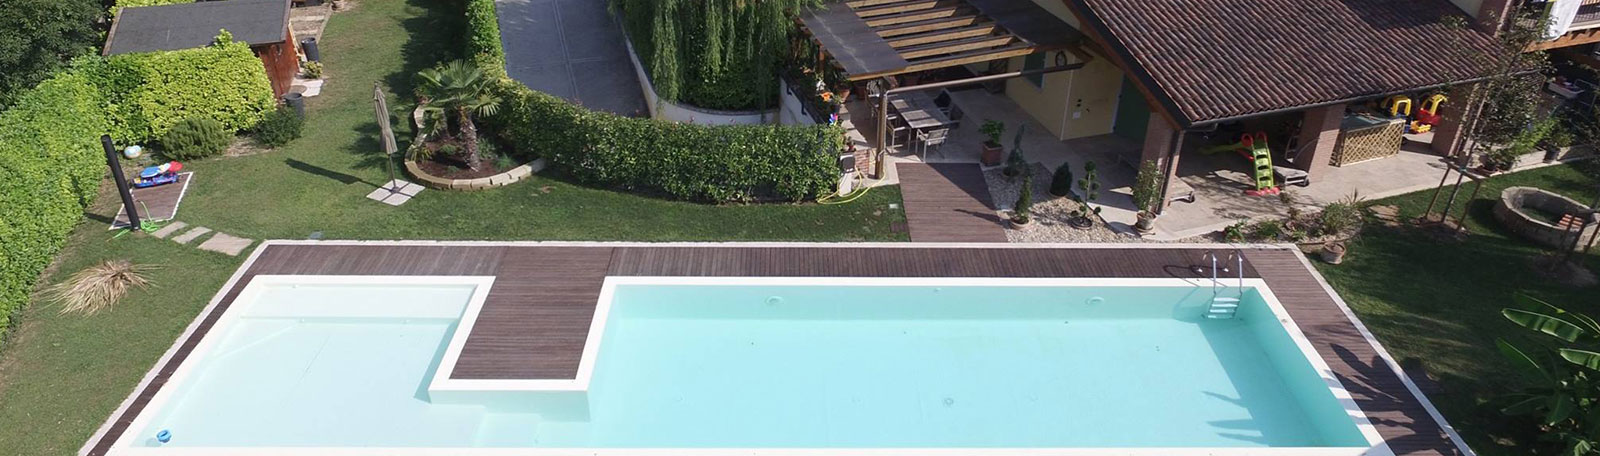 Realizzazione piscine Brescia